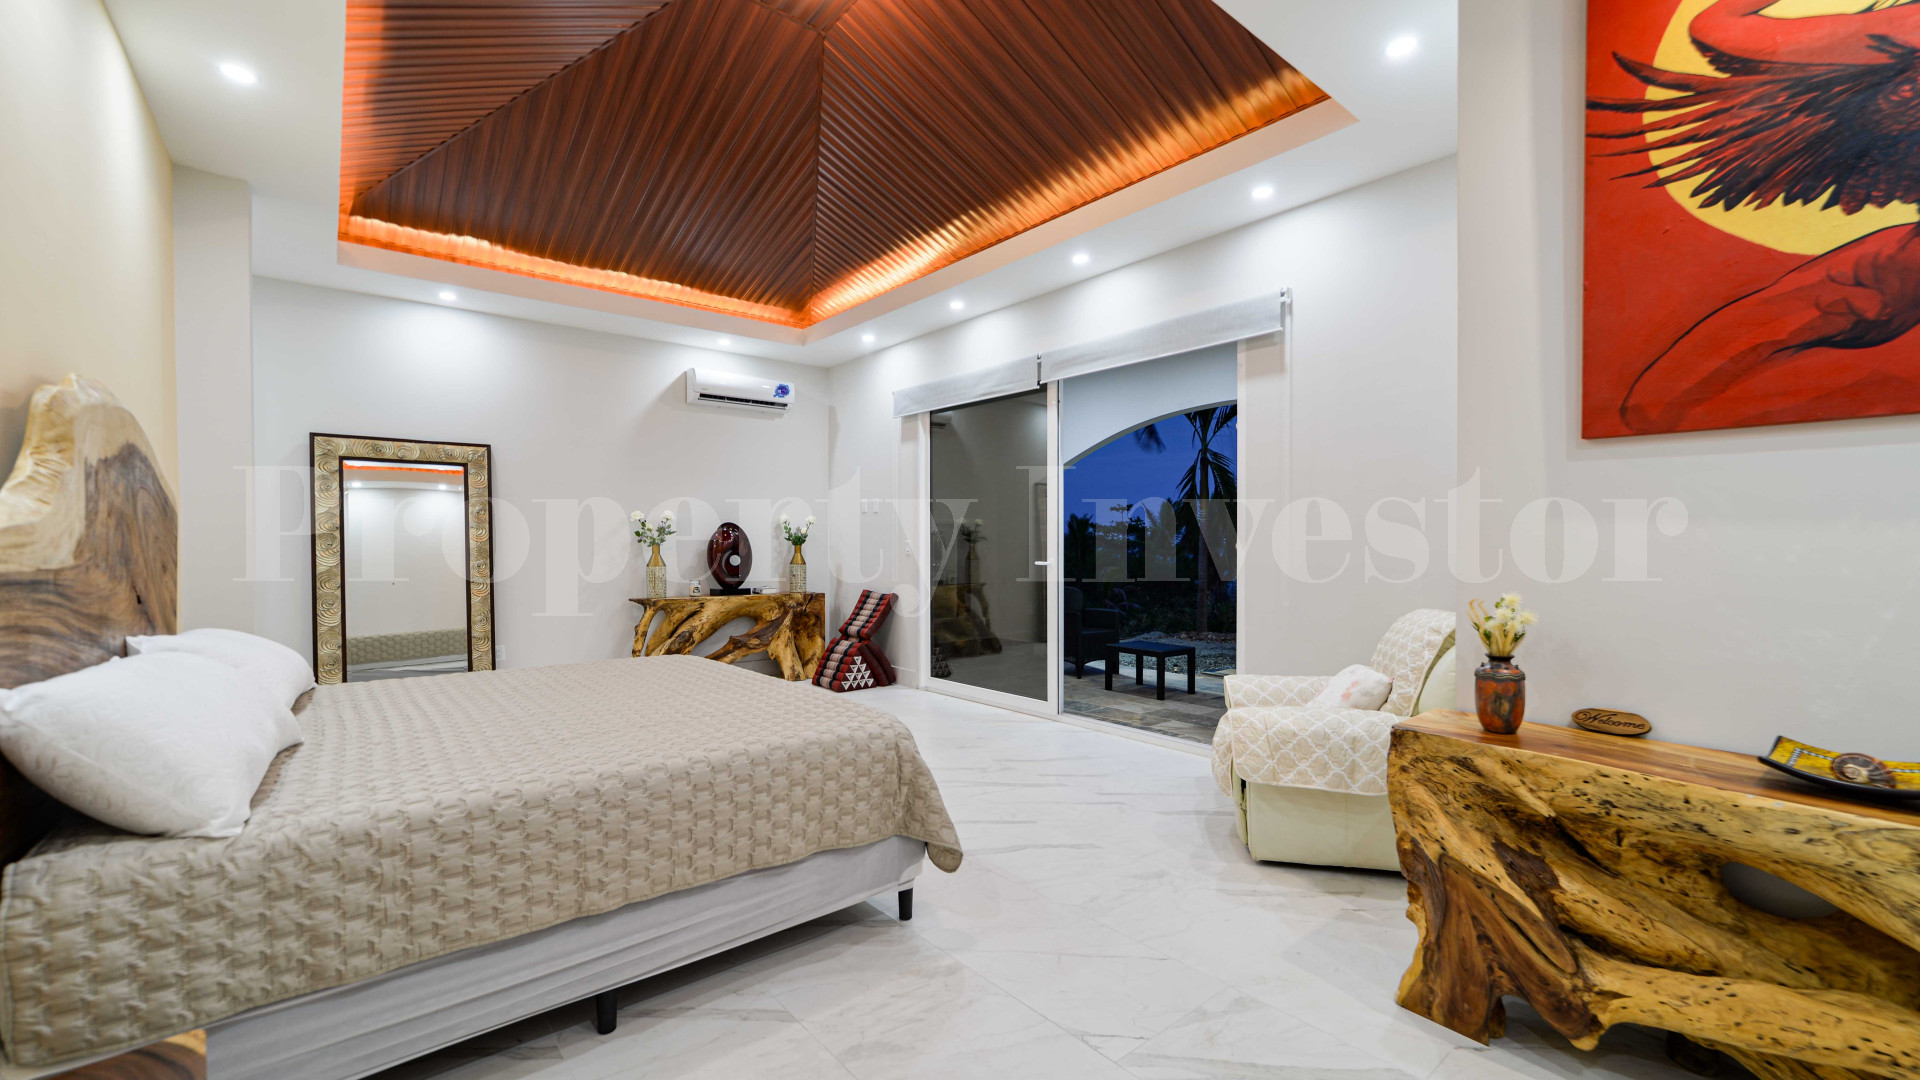 Brand New 3 Bedroom Luxury Oceanfront Villa for Sale in Pedasi, Panama